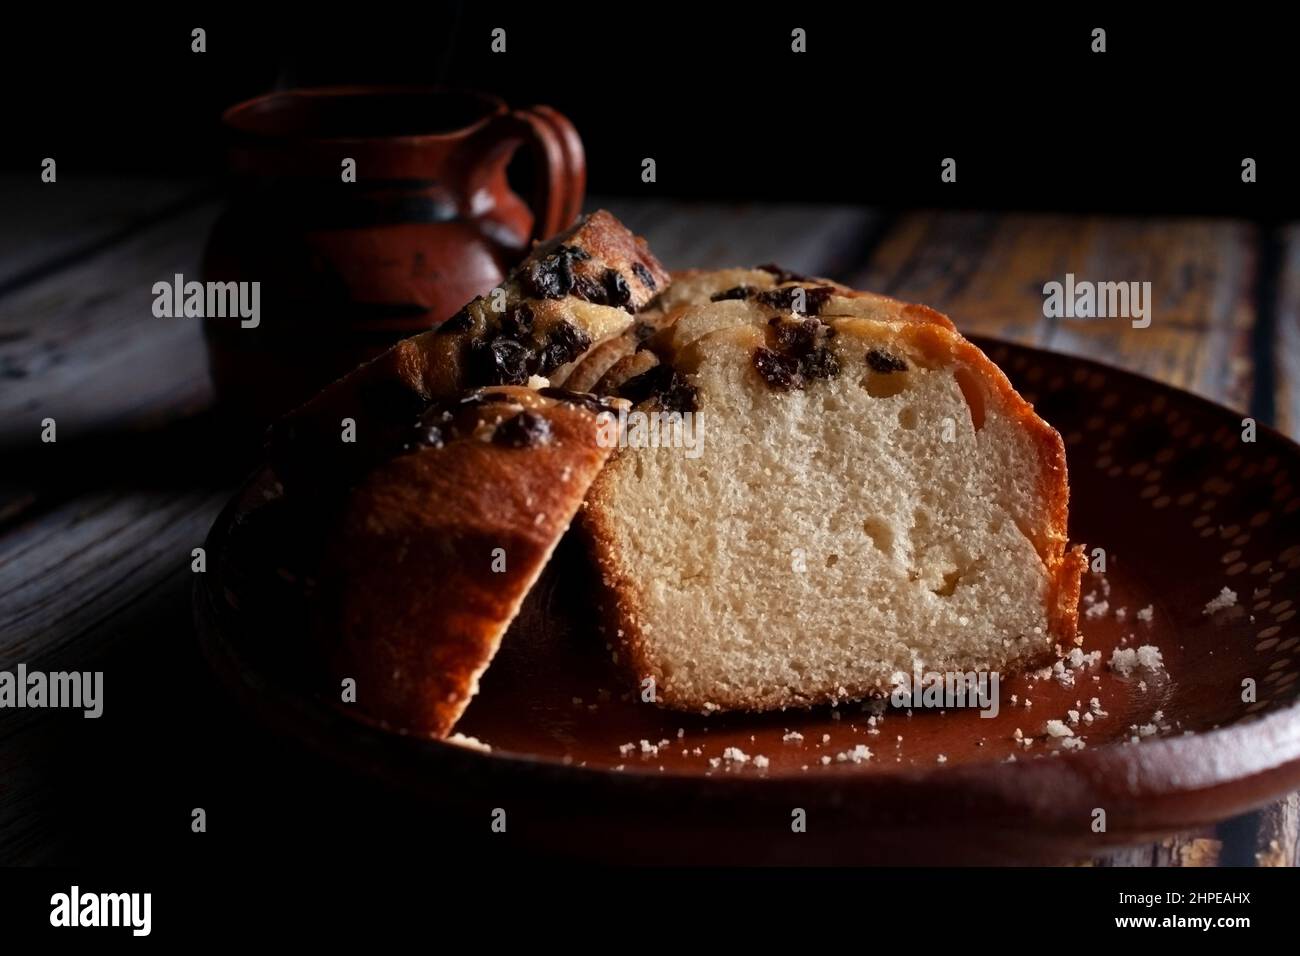 Ein handgebastelter mexikanischer Tonteller mit süßem Brot und Rosinen auf der Oberseite und einer dampfenden Tasse Kaffee oder heißem Schokoladenkakao im Hintergrund. Stockfoto